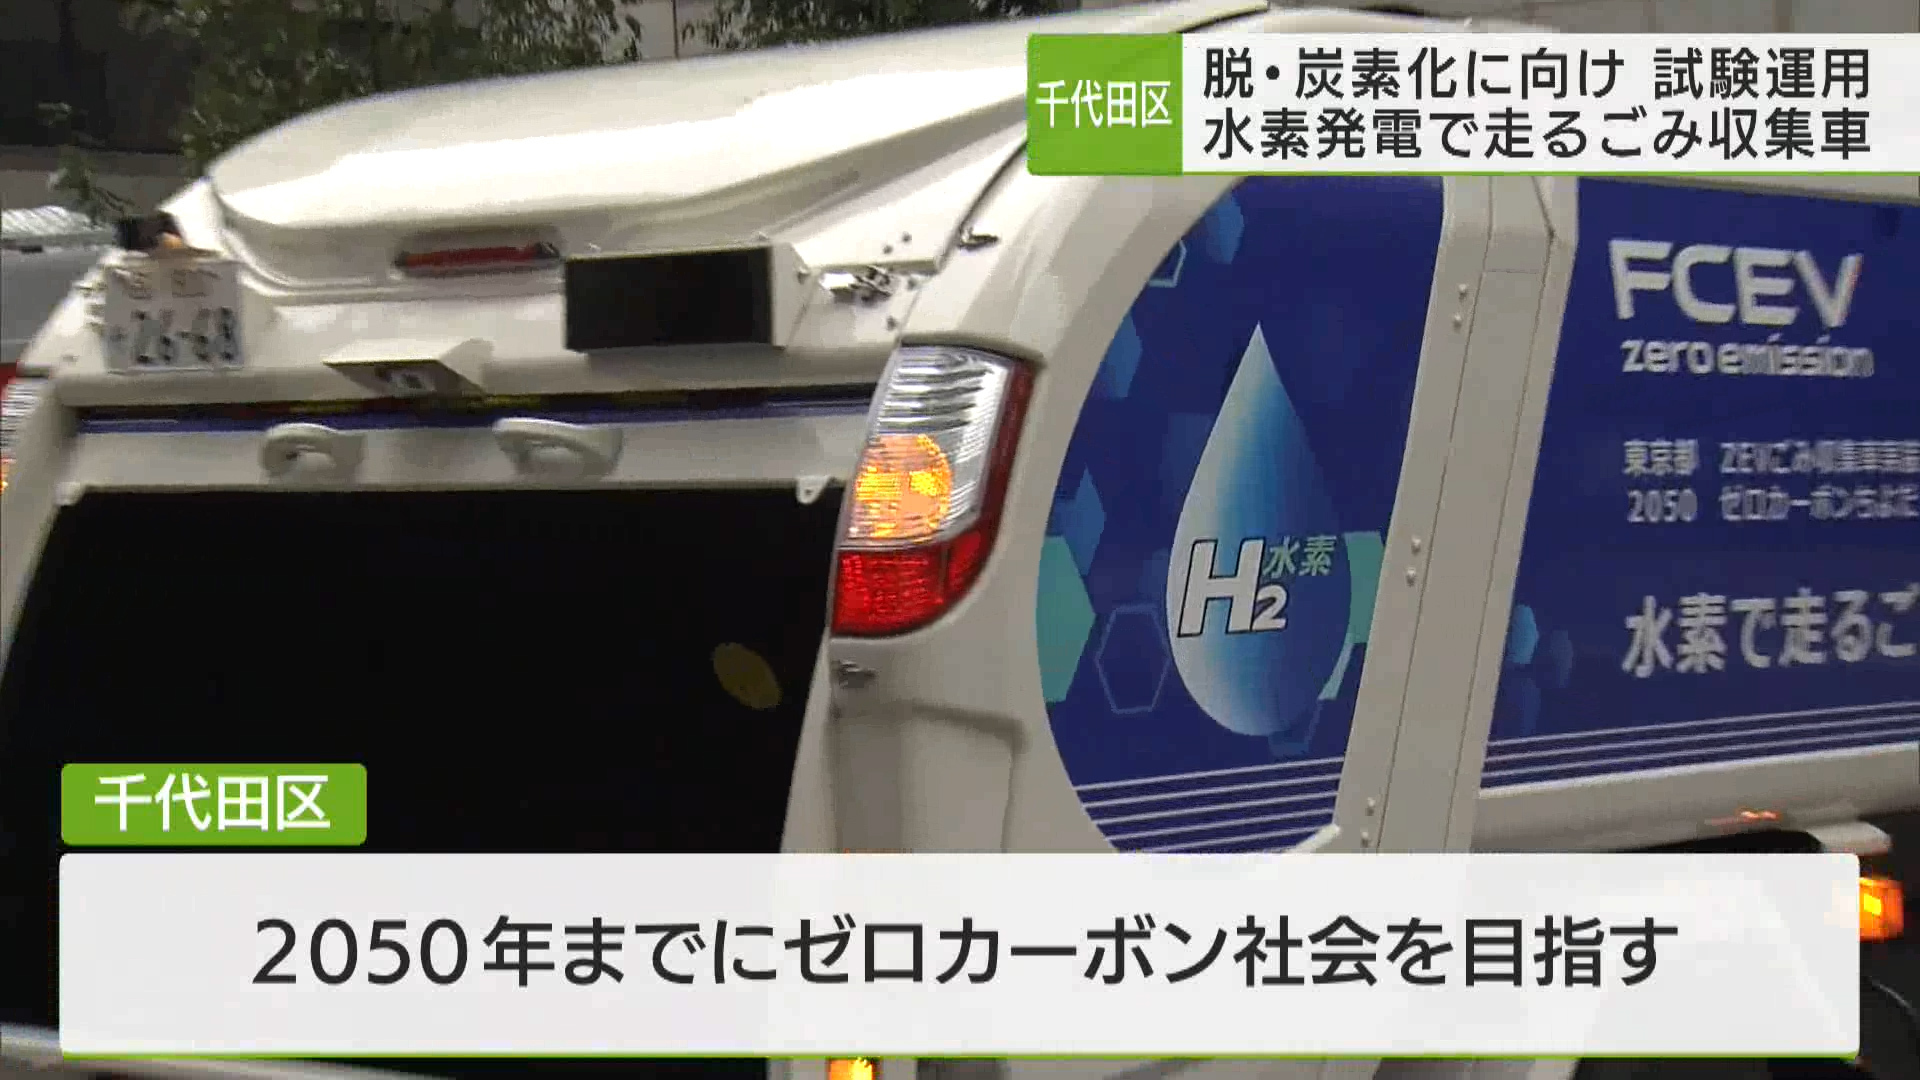 千代田区が、脱・炭素化事業の一環として、水素発電によって動くごみ収集車の試験運用をスタートさせました。